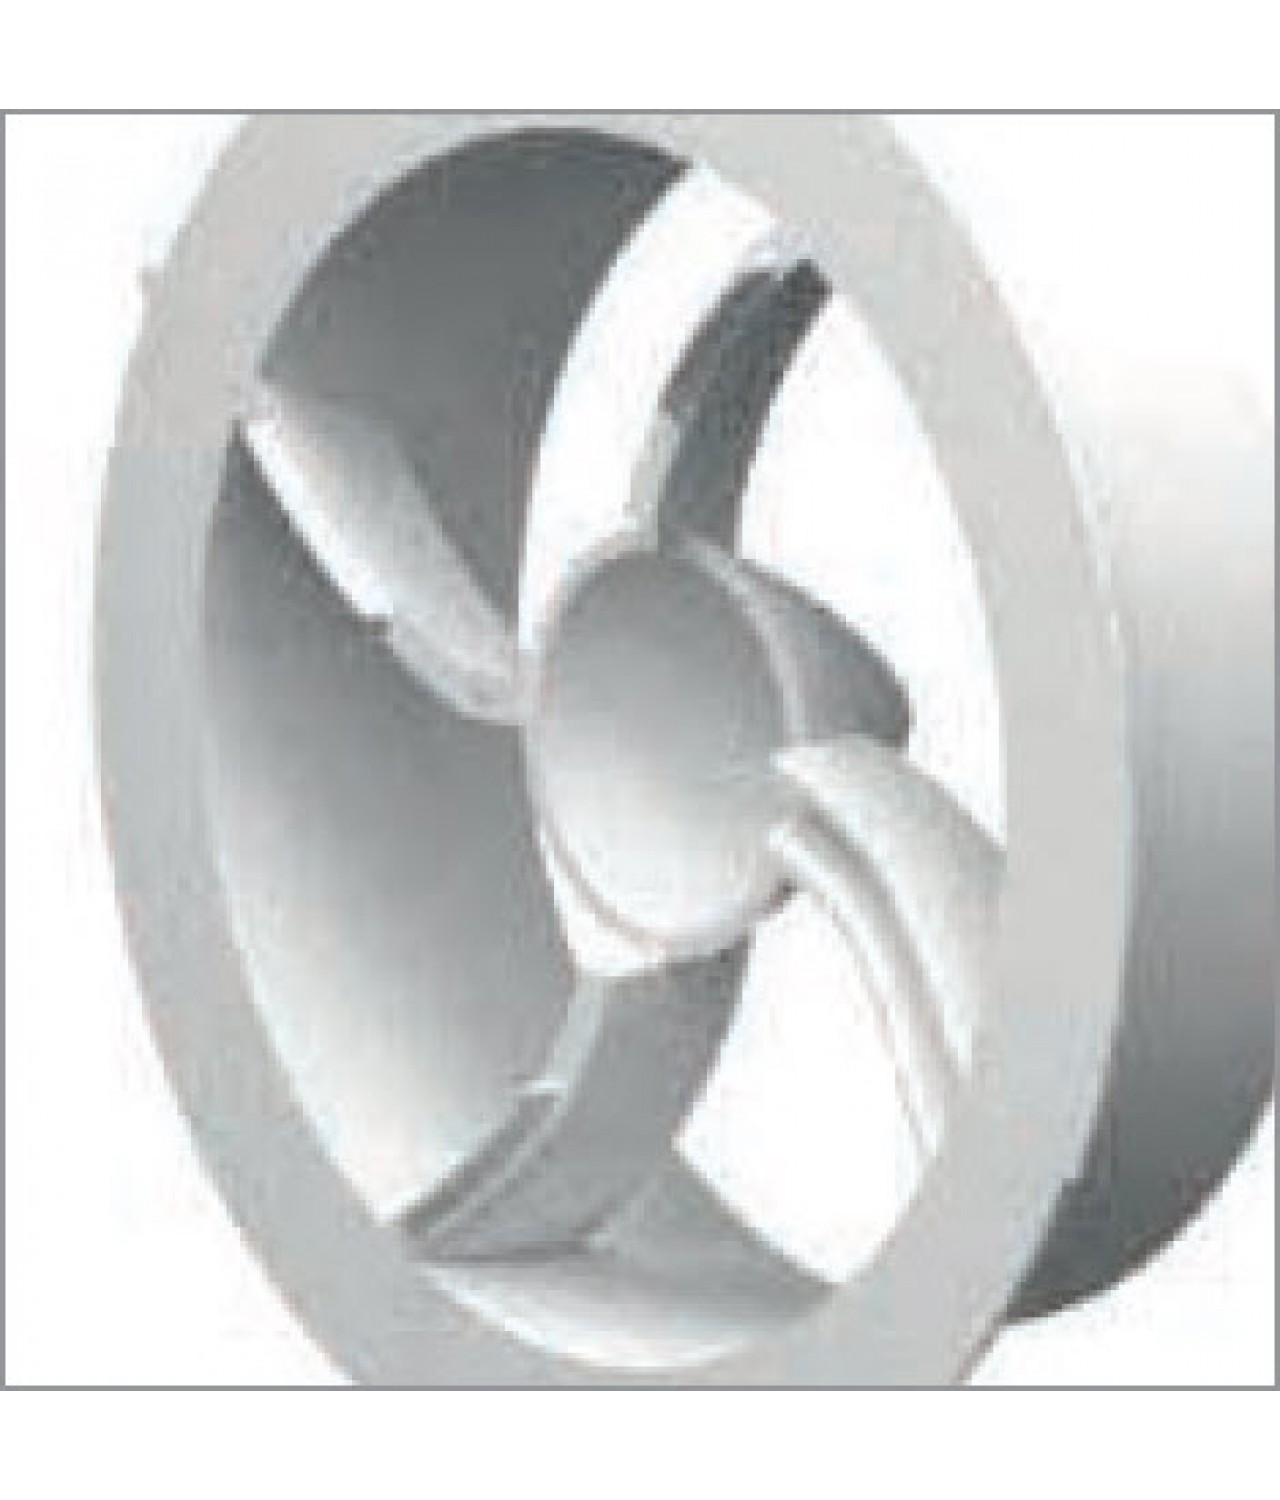 @max ventiliatorių atvamzdžiai su efektyvumą gerinančiomis nukreipiamosiomis mentelėmis